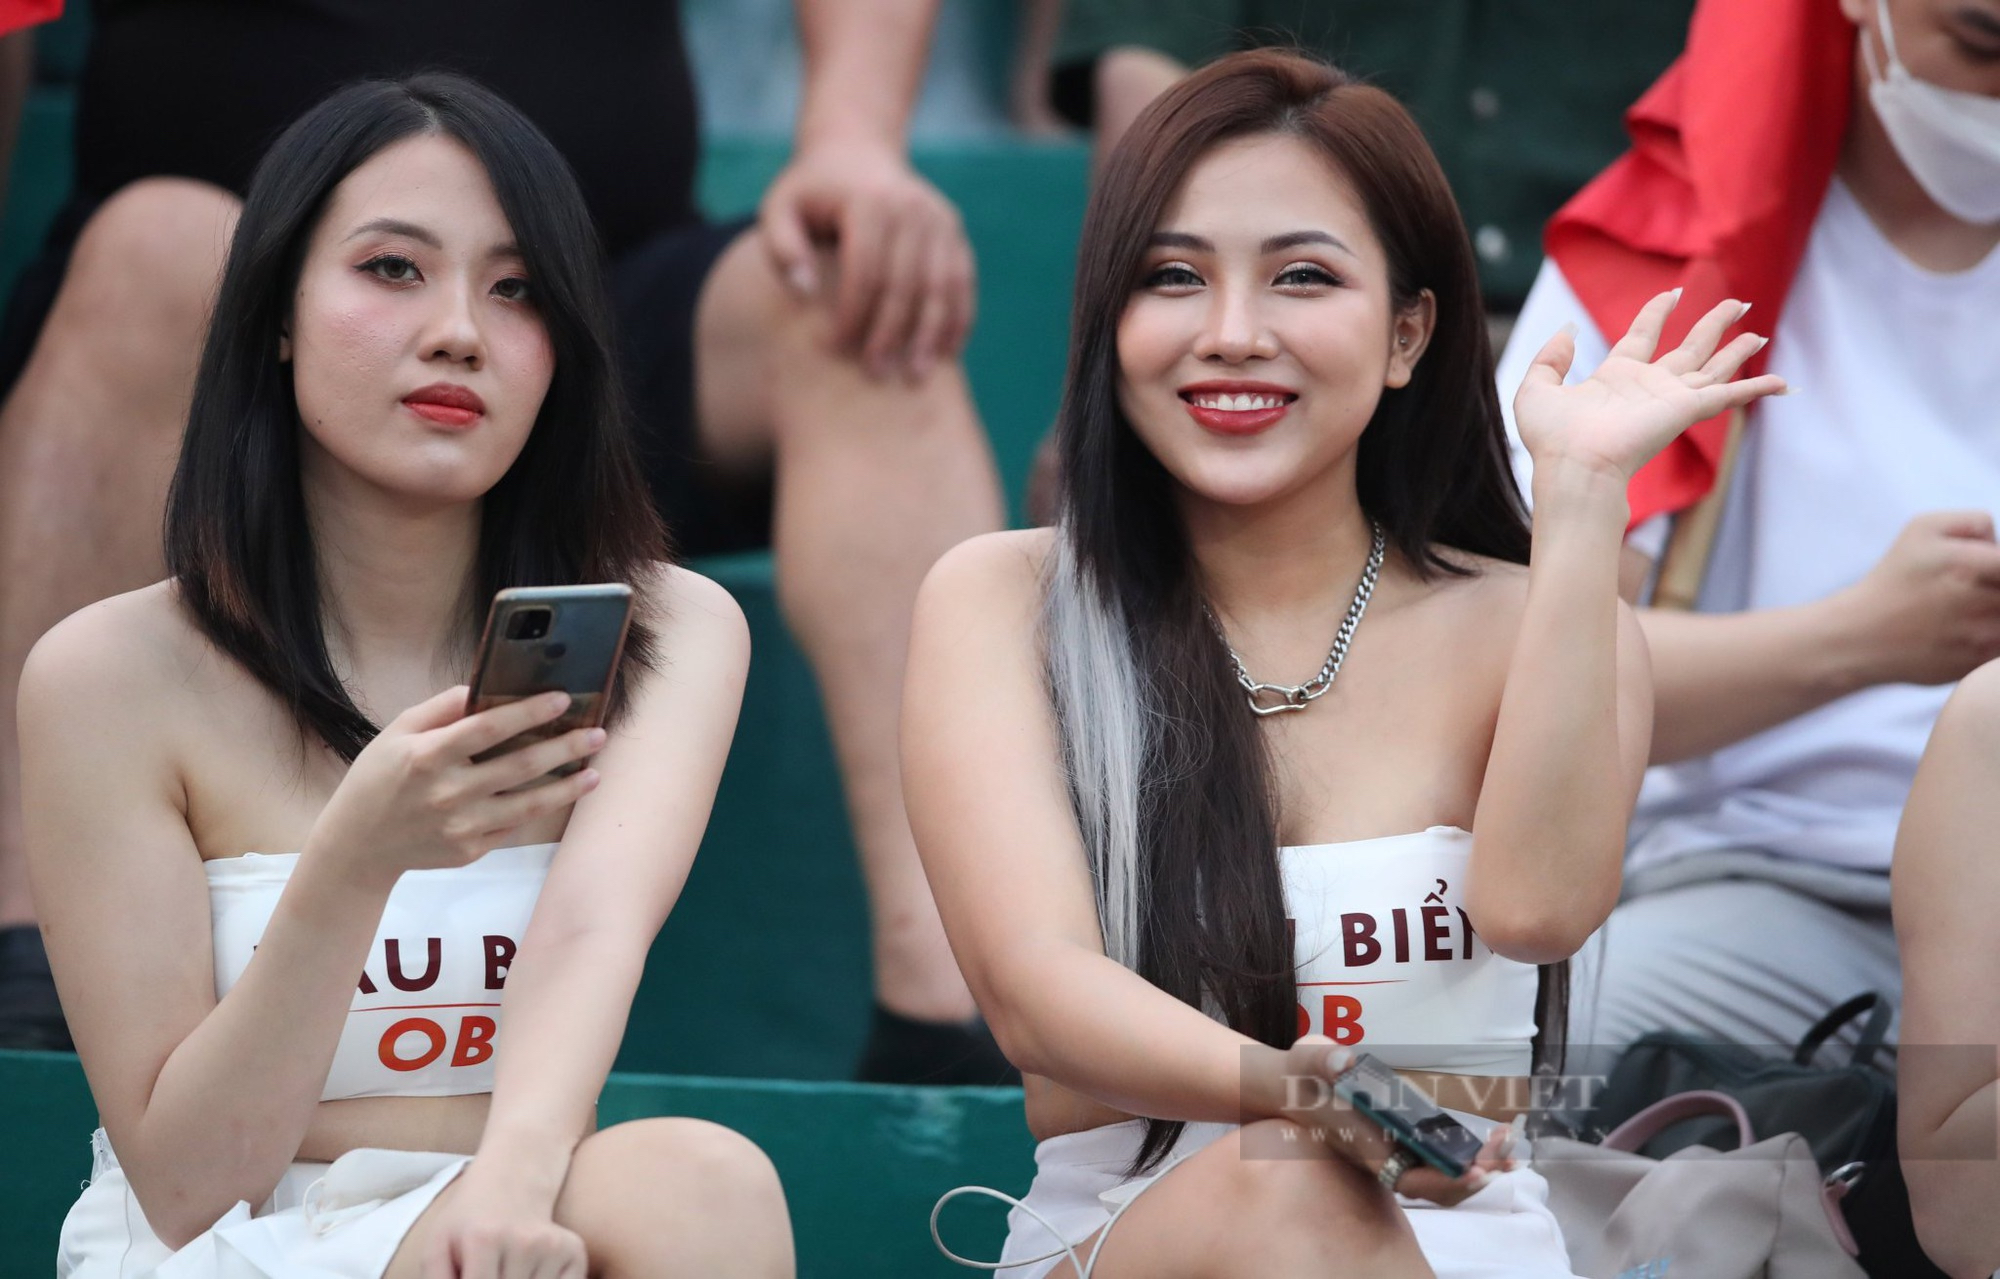 Dàn hot girl xinh đẹp xuất hiện trên khán đài ăn mừng khi U23 Việt Nam chiến thắng - Ảnh 8.